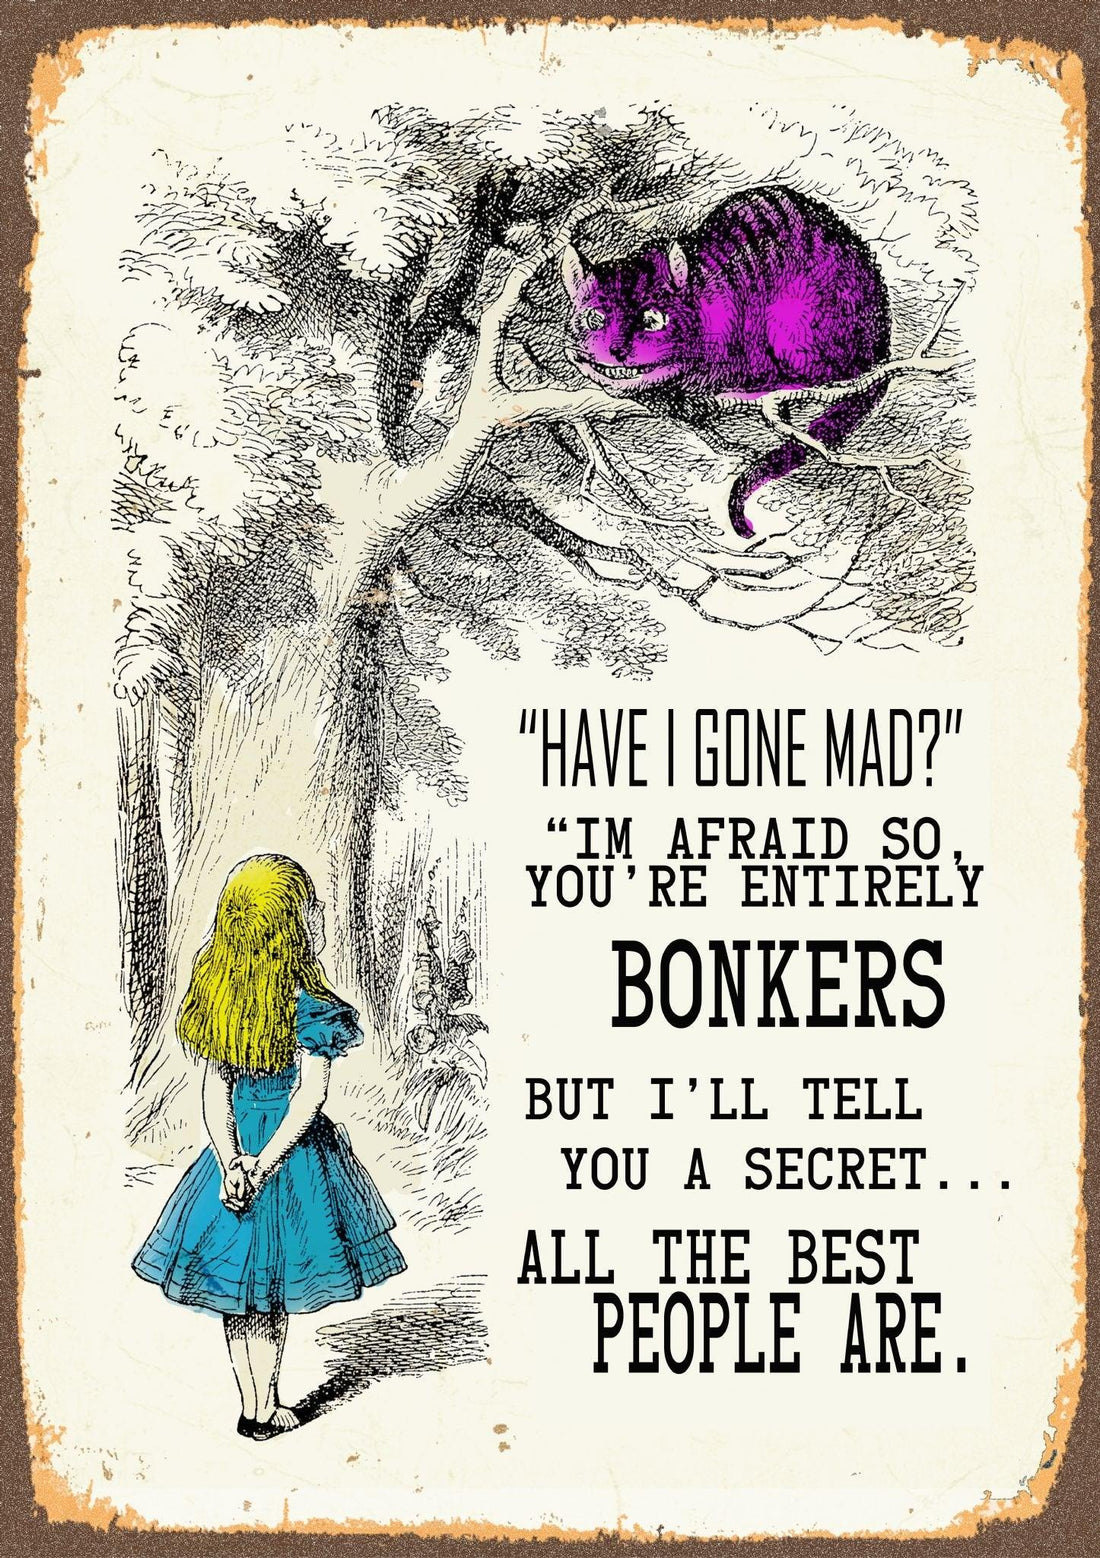 Vintage Metal Sign - Alice In Wonderland - Have I Gone Mad - £27.99 - Metal Sign 